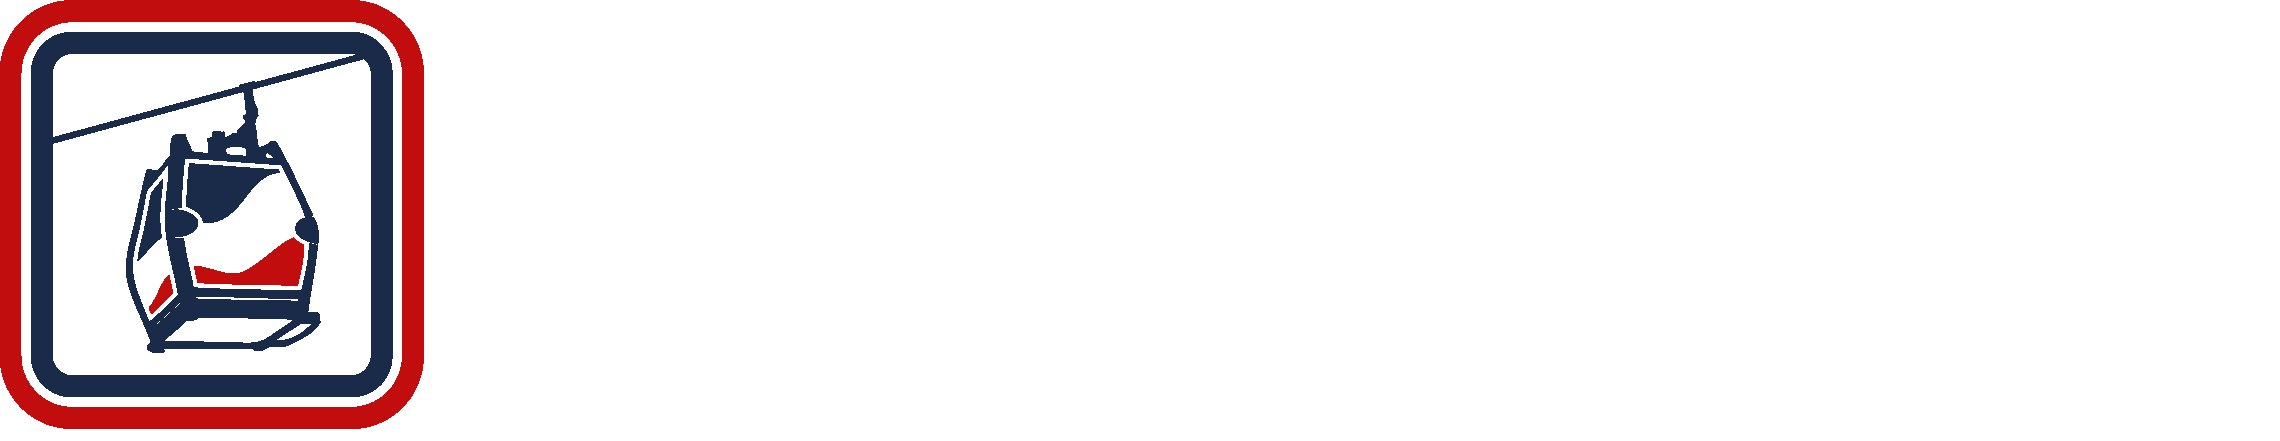 SEVLC